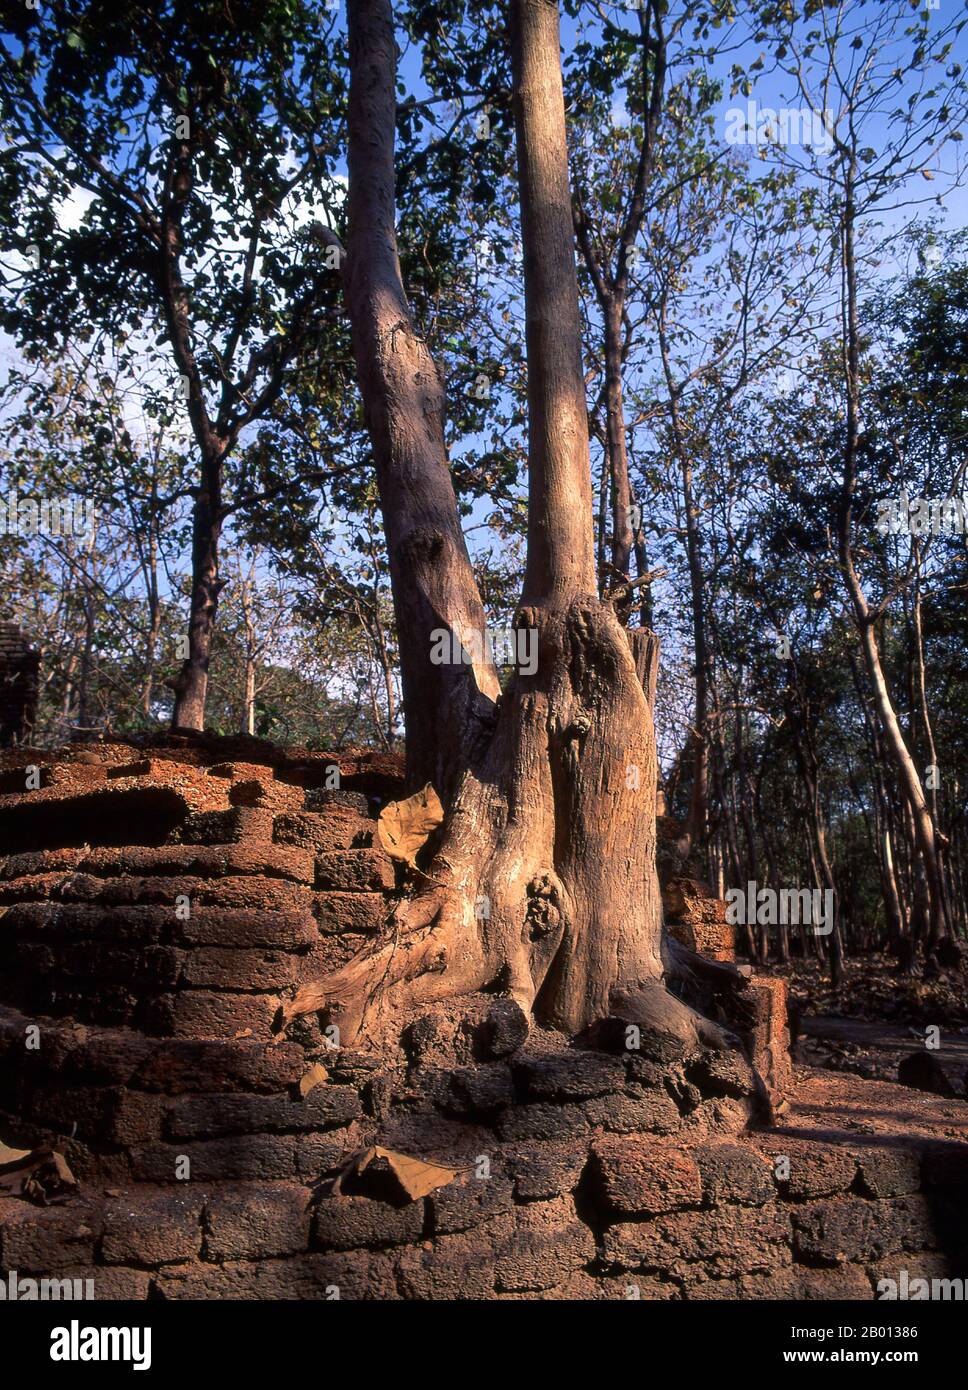 Thailand: Tempelruinen im Kamphaeng Phet Historical Park. Der Kamphaeng Phet Historical Park im Zentrum Thailands war einst Teil des Sukhothai-Königreichs, das im 13. Und 14. Jahrhundert n. Chr. blühte. Das Königreich Sukhothai war das erste der thailändischen Königreiche. Stockfoto